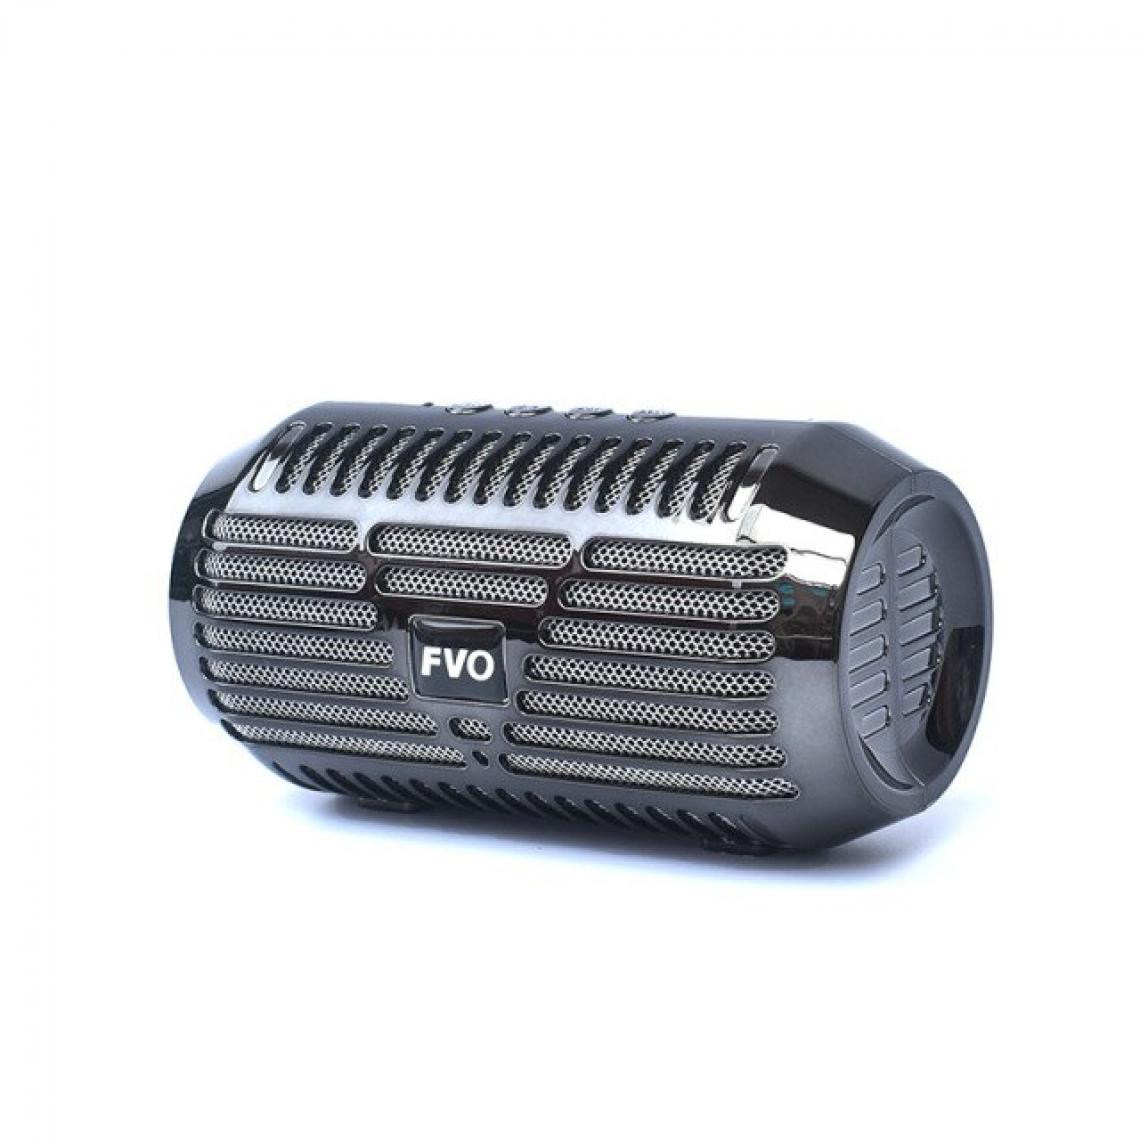 Universal - Haut-parleur Bluetooth portable Mini haut-parleur sans fil stéréo avec radio FM Carte SD USB AUX MP3 Lecteur de musique Colonne téléphonique Téléphone mobile | Haut-parleur portable (noir) - Hauts-parleurs